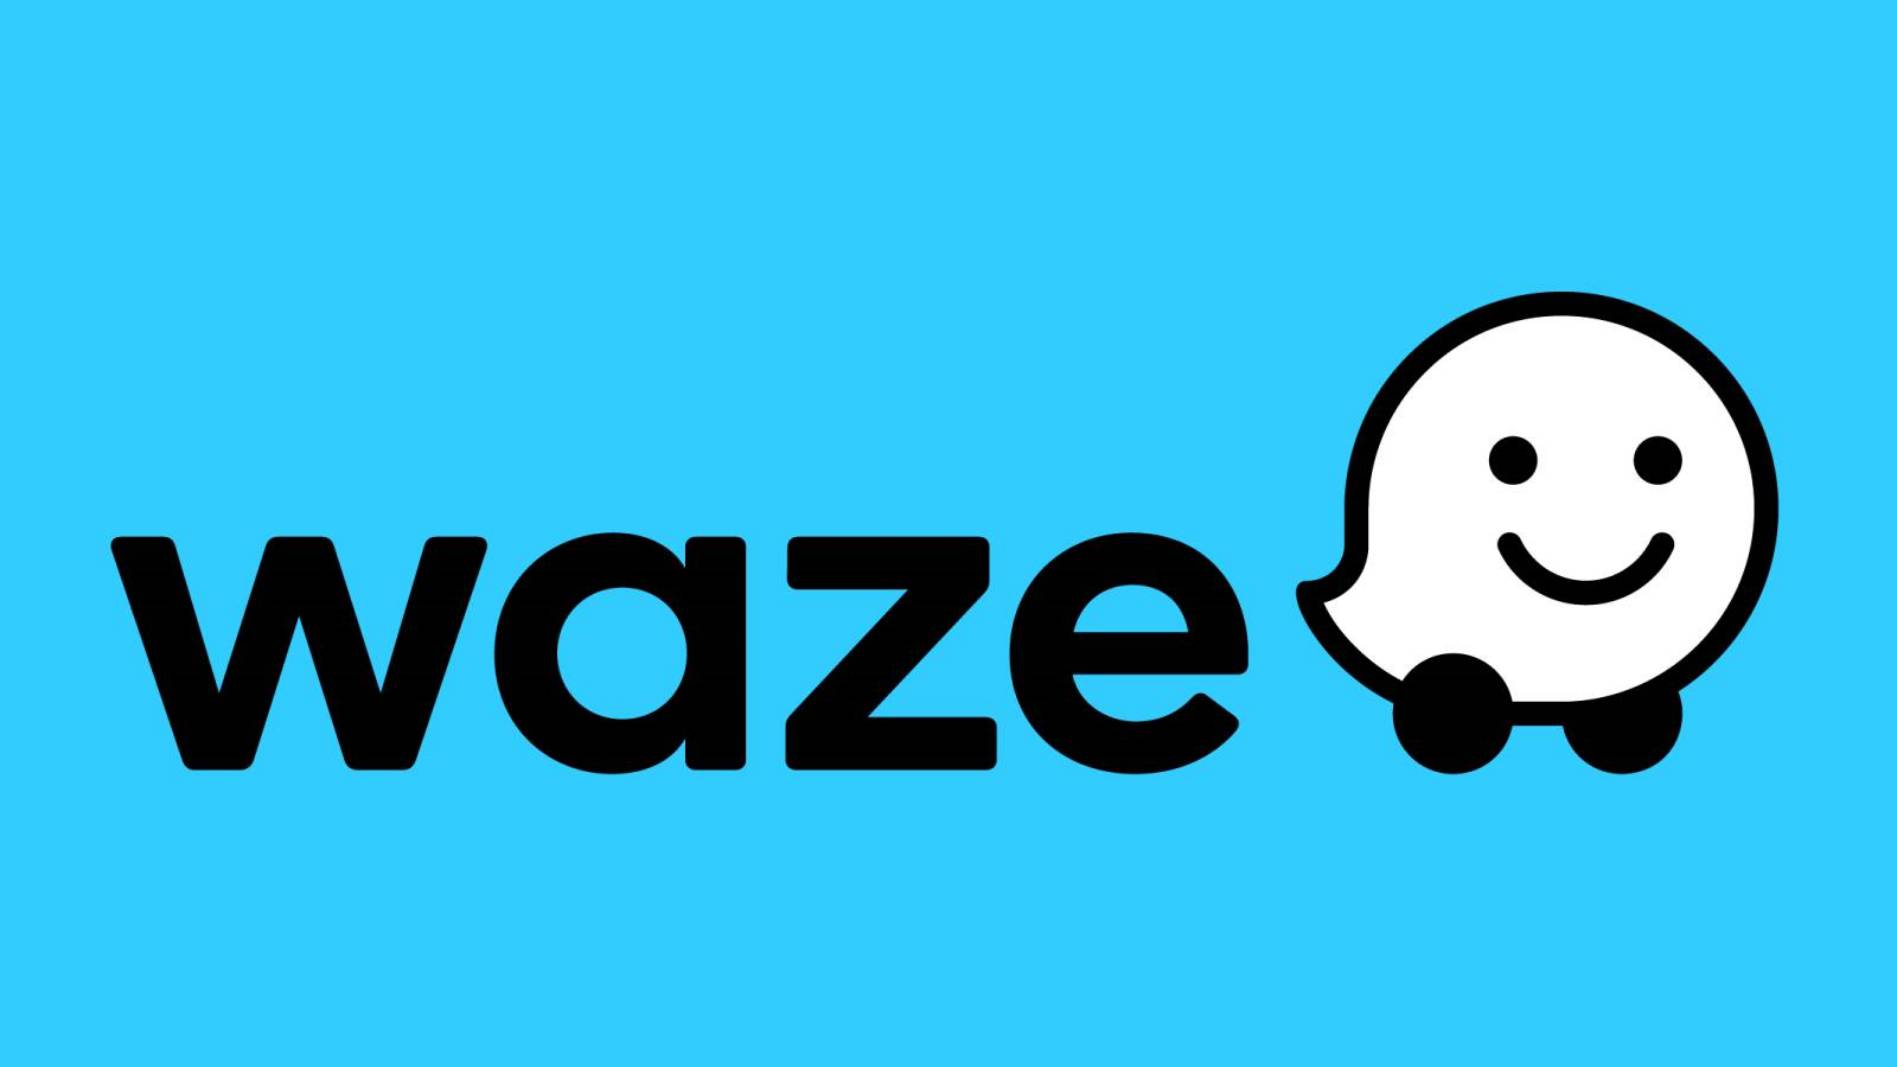 Waze inizierà a mostrare due nuovi avvisi su iPhone e Android